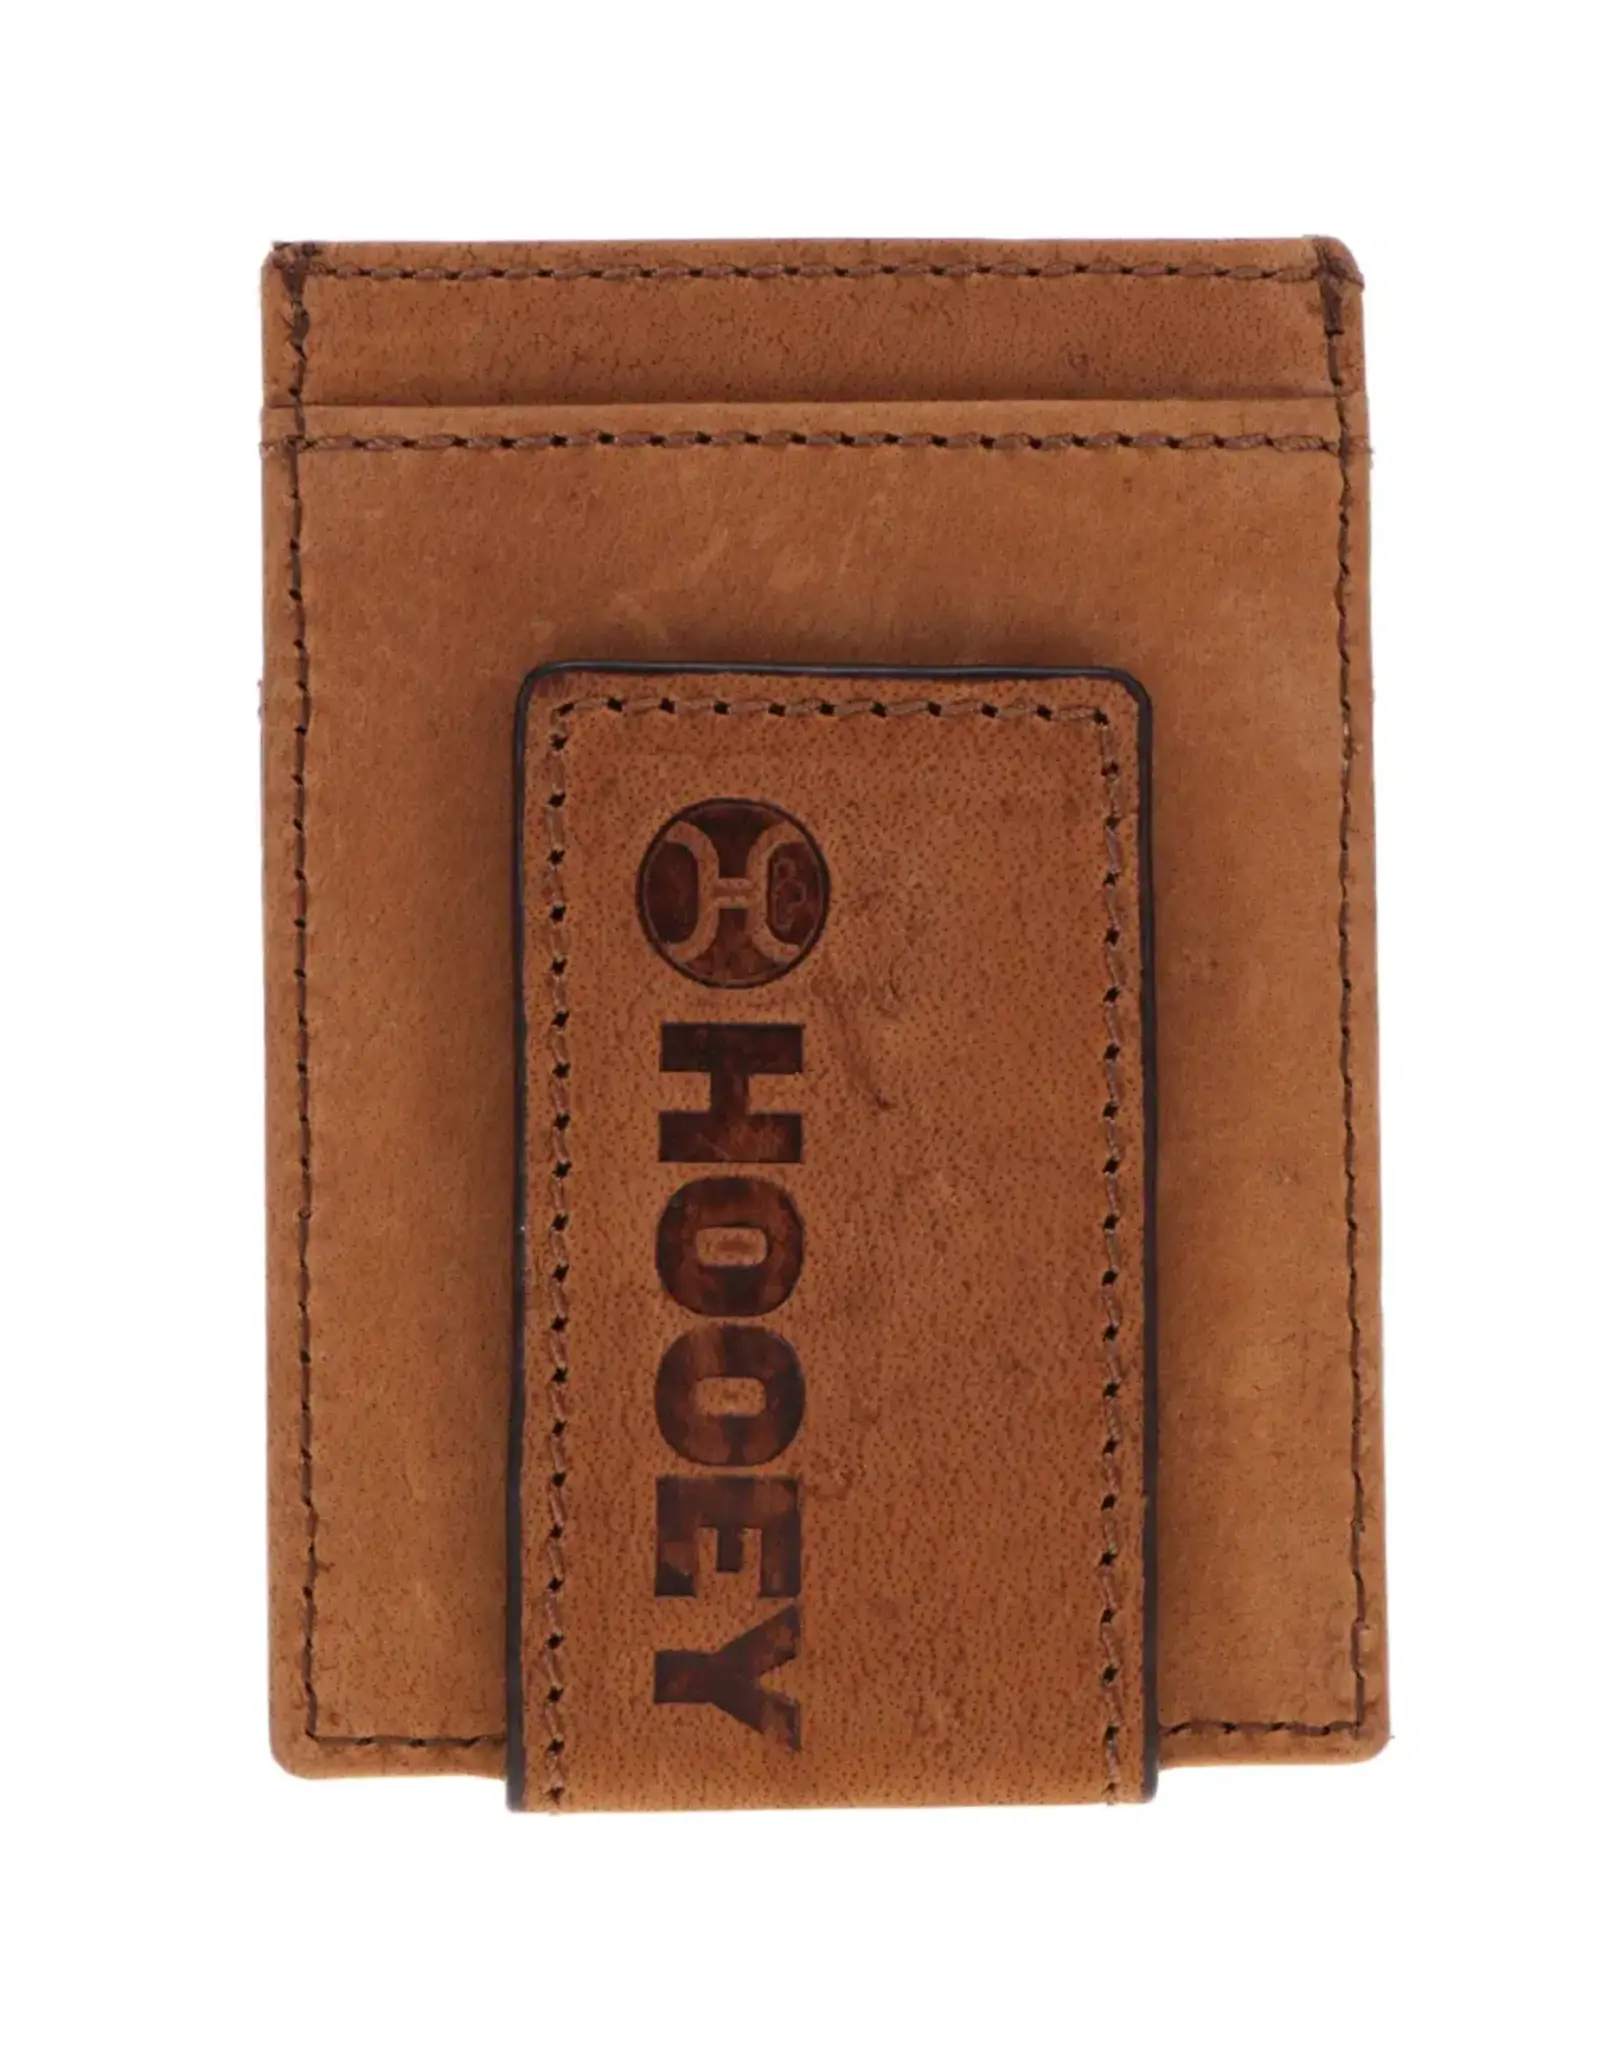 Hooey Brands "Monterey" Money Clip Brown w/ Aztec Embossed Print Wallet